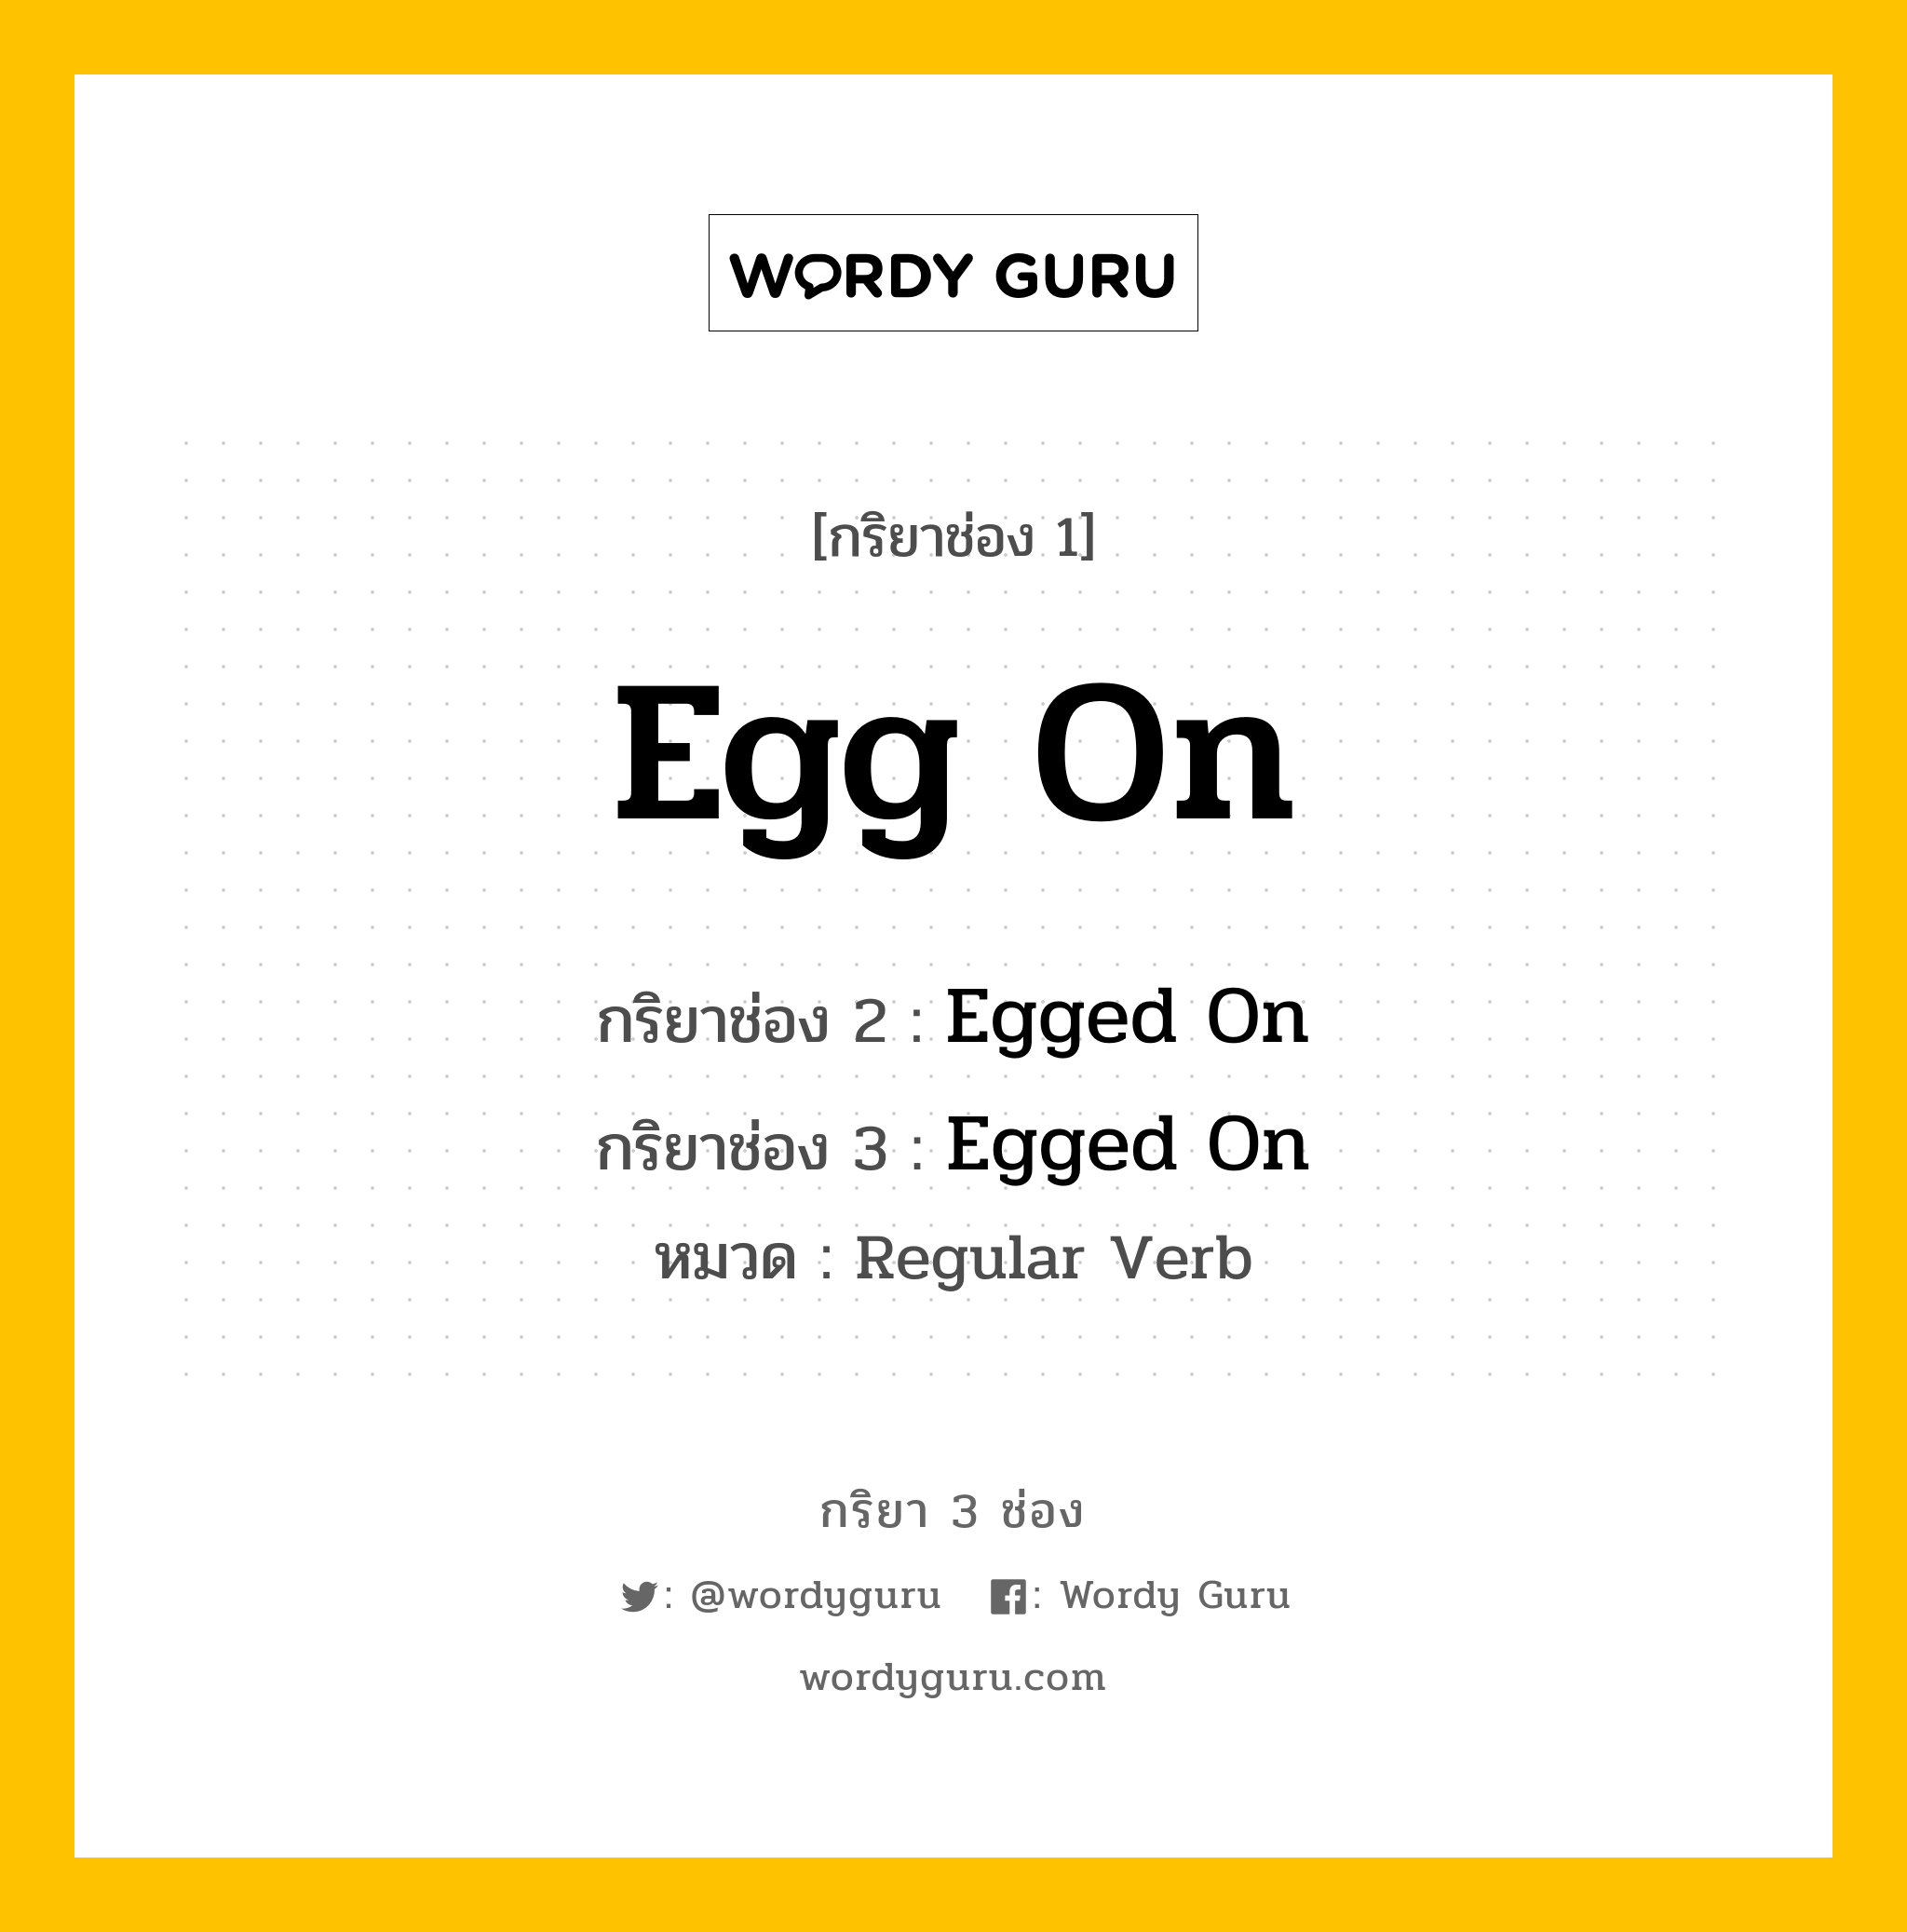 กริยา 3 ช่อง: Egg On ช่อง 2 Egg On ช่อง 3 คืออะไร, กริยาช่อง 1 Egg On กริยาช่อง 2 Egged On กริยาช่อง 3 Egged On หมวด Regular Verb หมวด Regular Verb